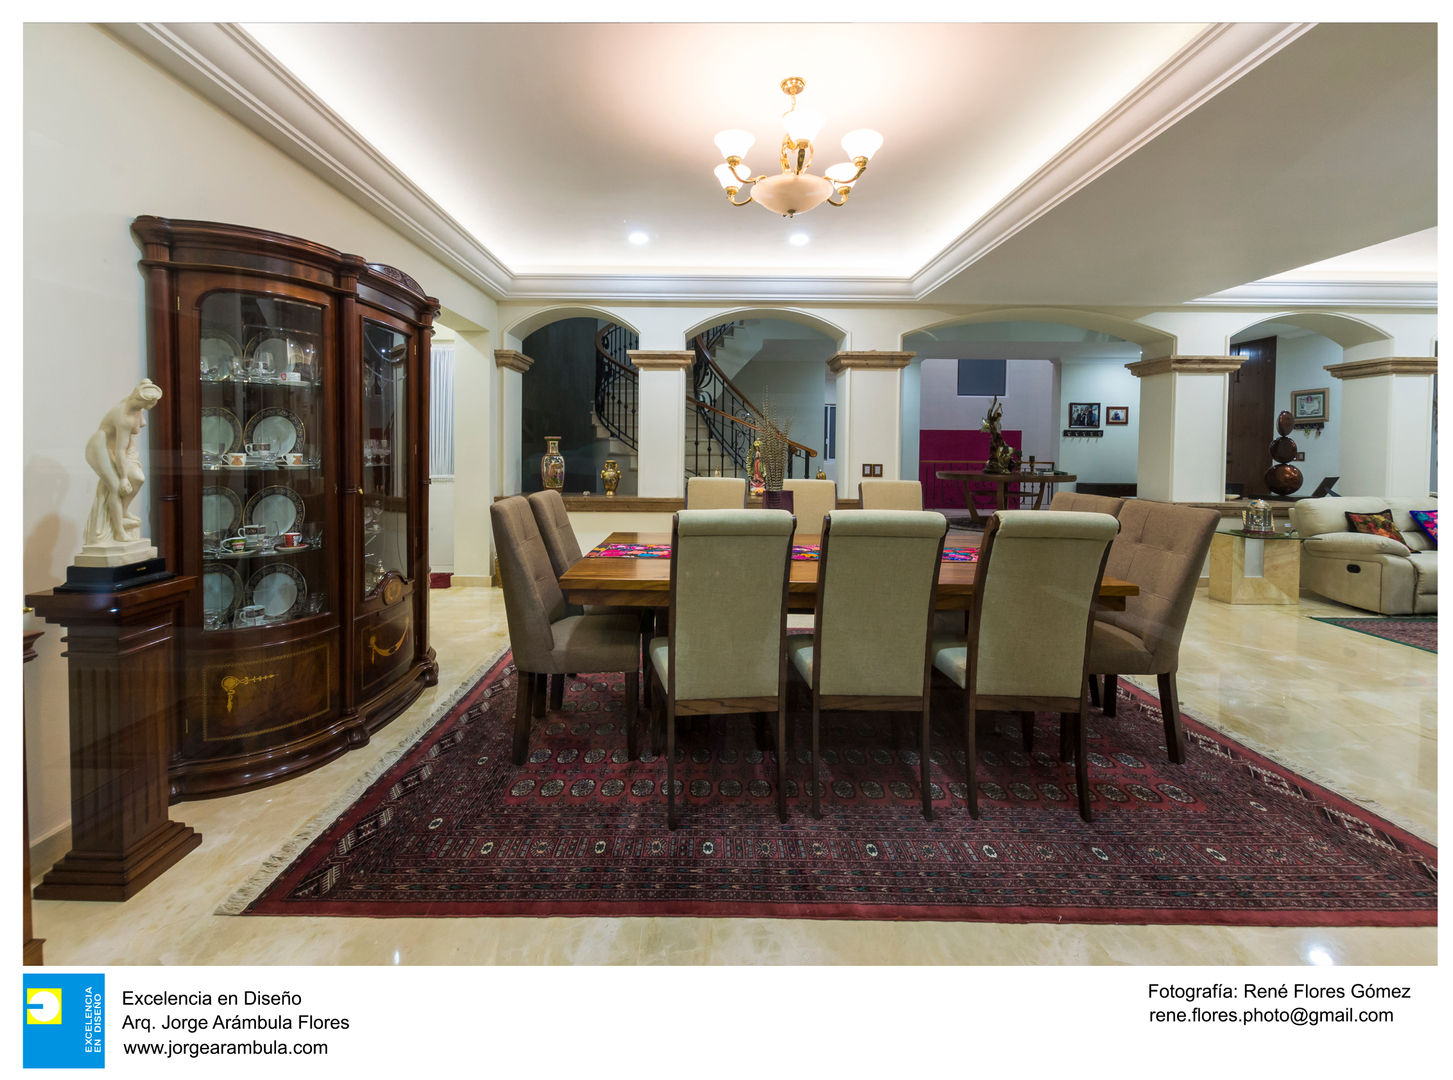 Casa Alberta, Excelencia en Diseño Excelencia en Diseño Salas de jantar coloniais